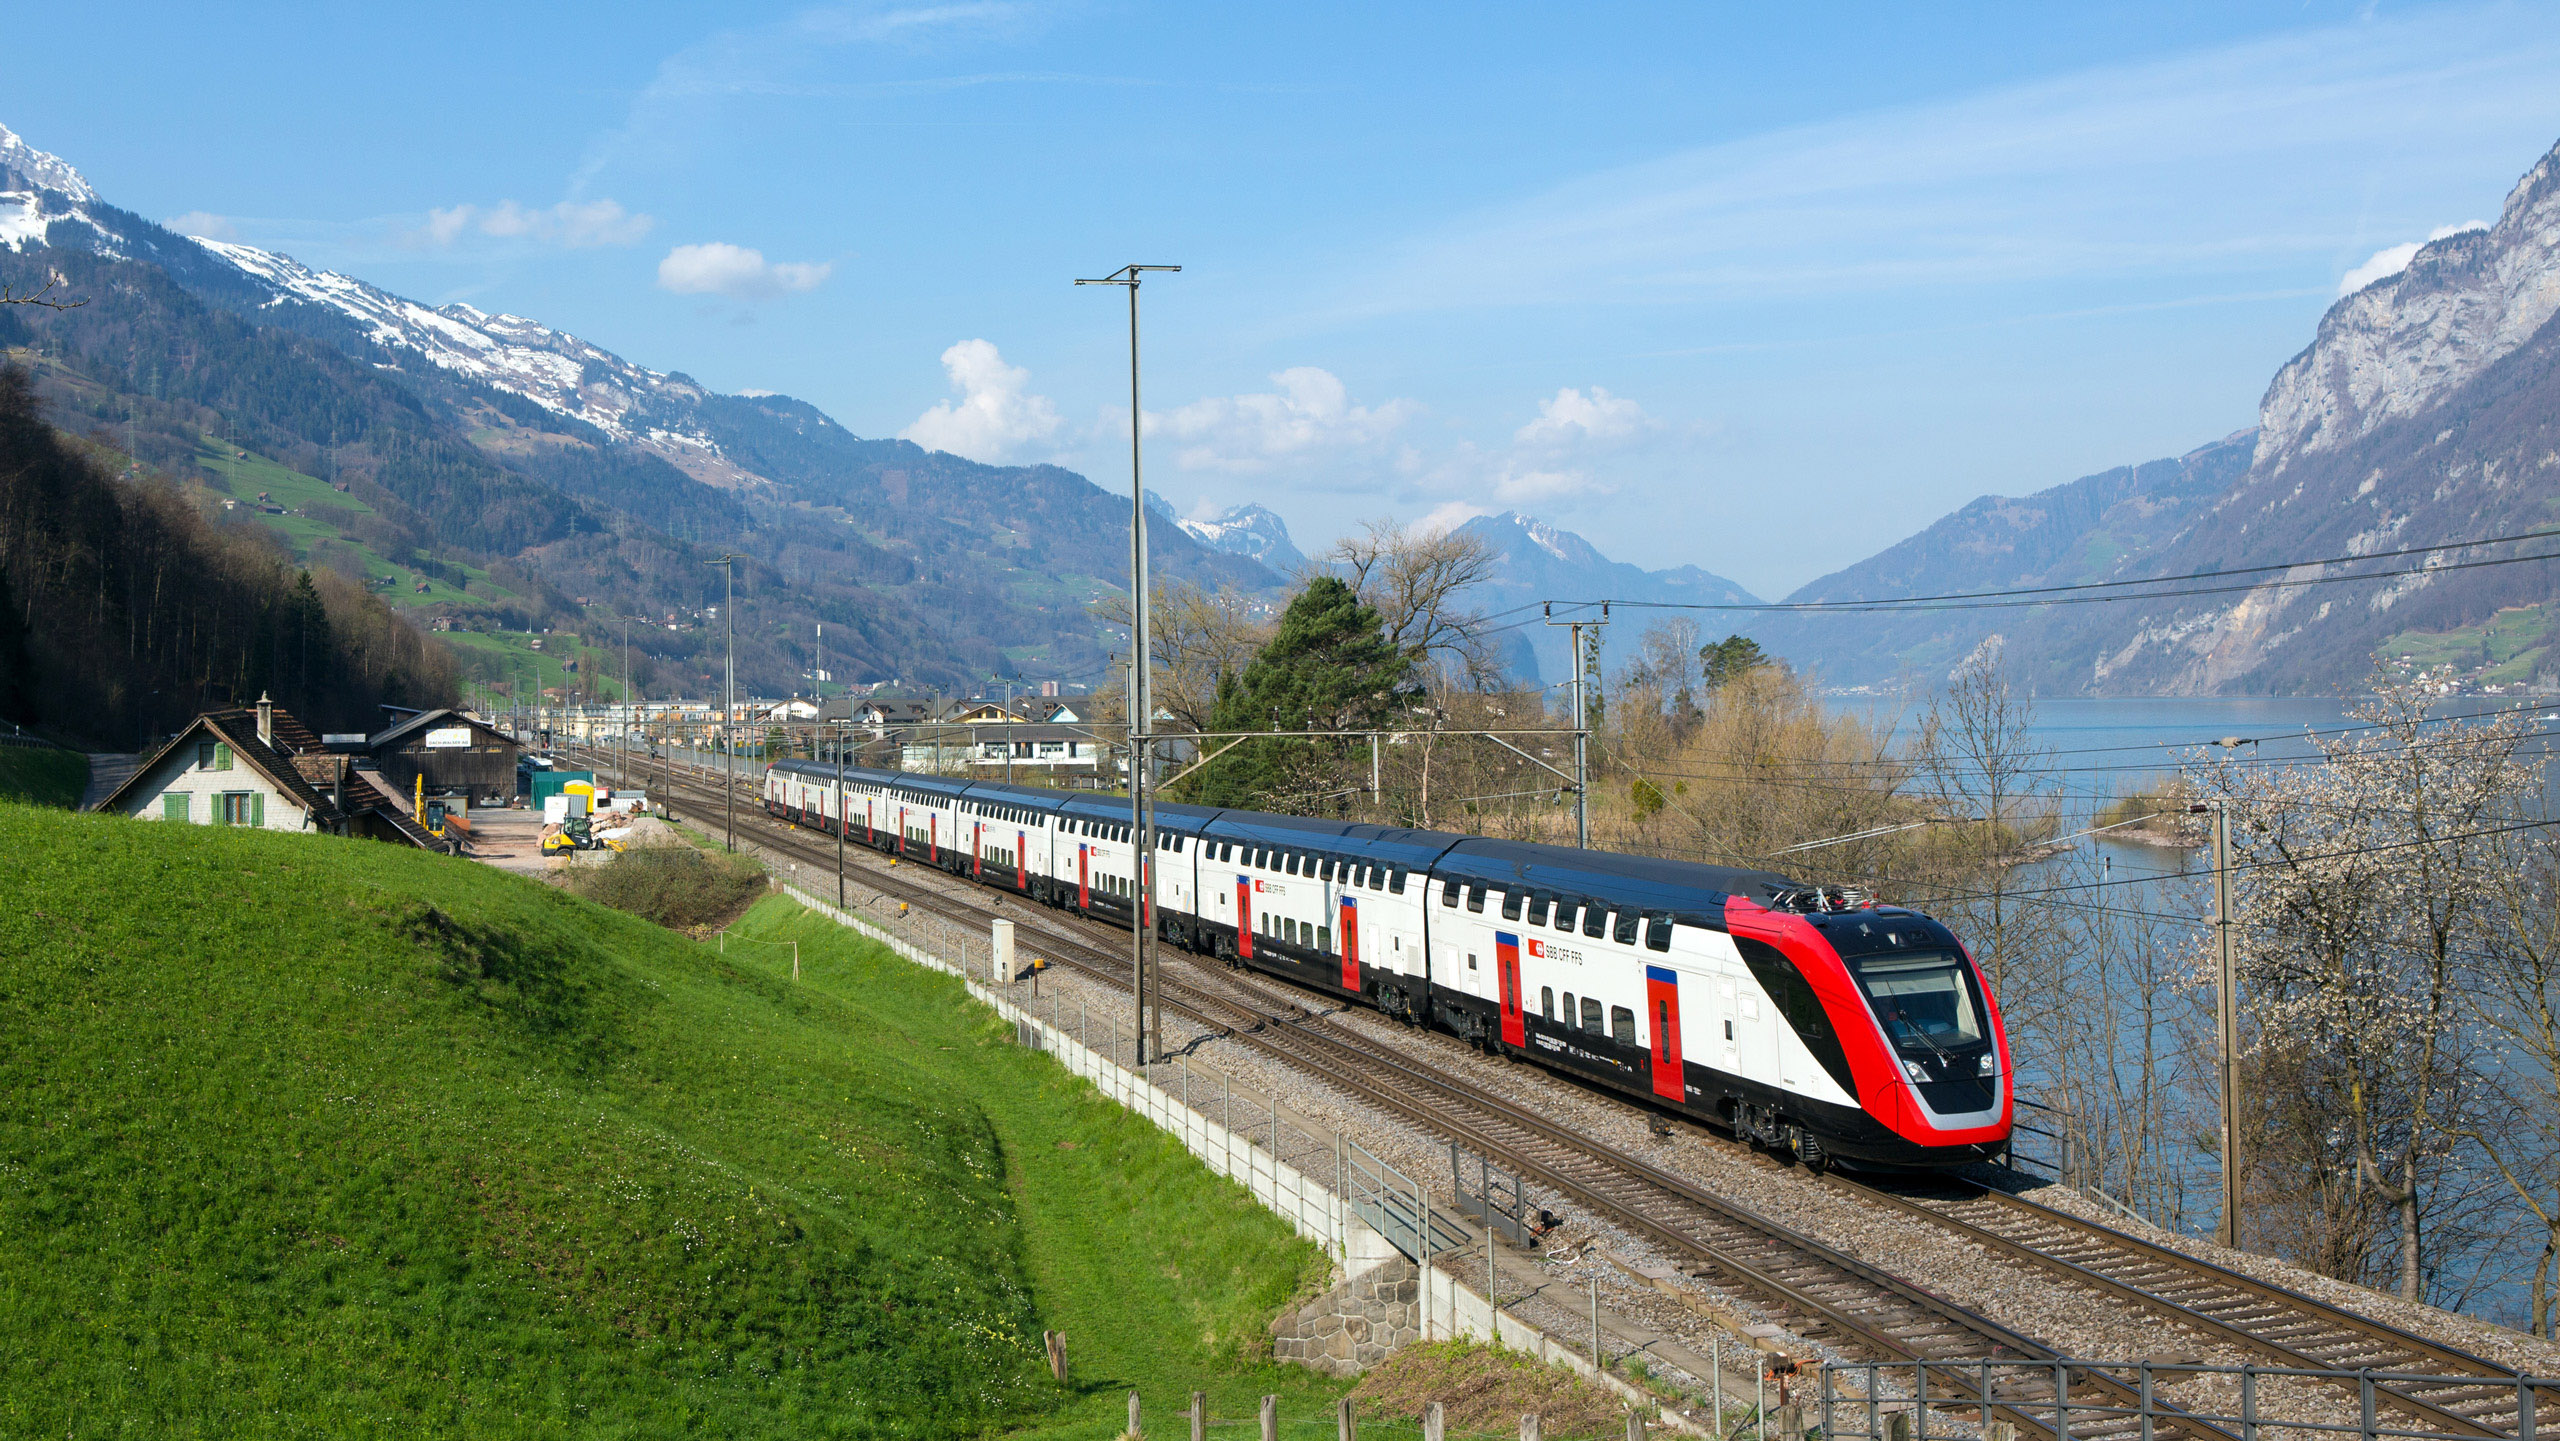 Туры на жд поездах. Железнодорожная магистраль Швейцарии. Поезд Швейцария высокоскоростной. SBB Швейцария. Скоростные поезда Швейцарии.